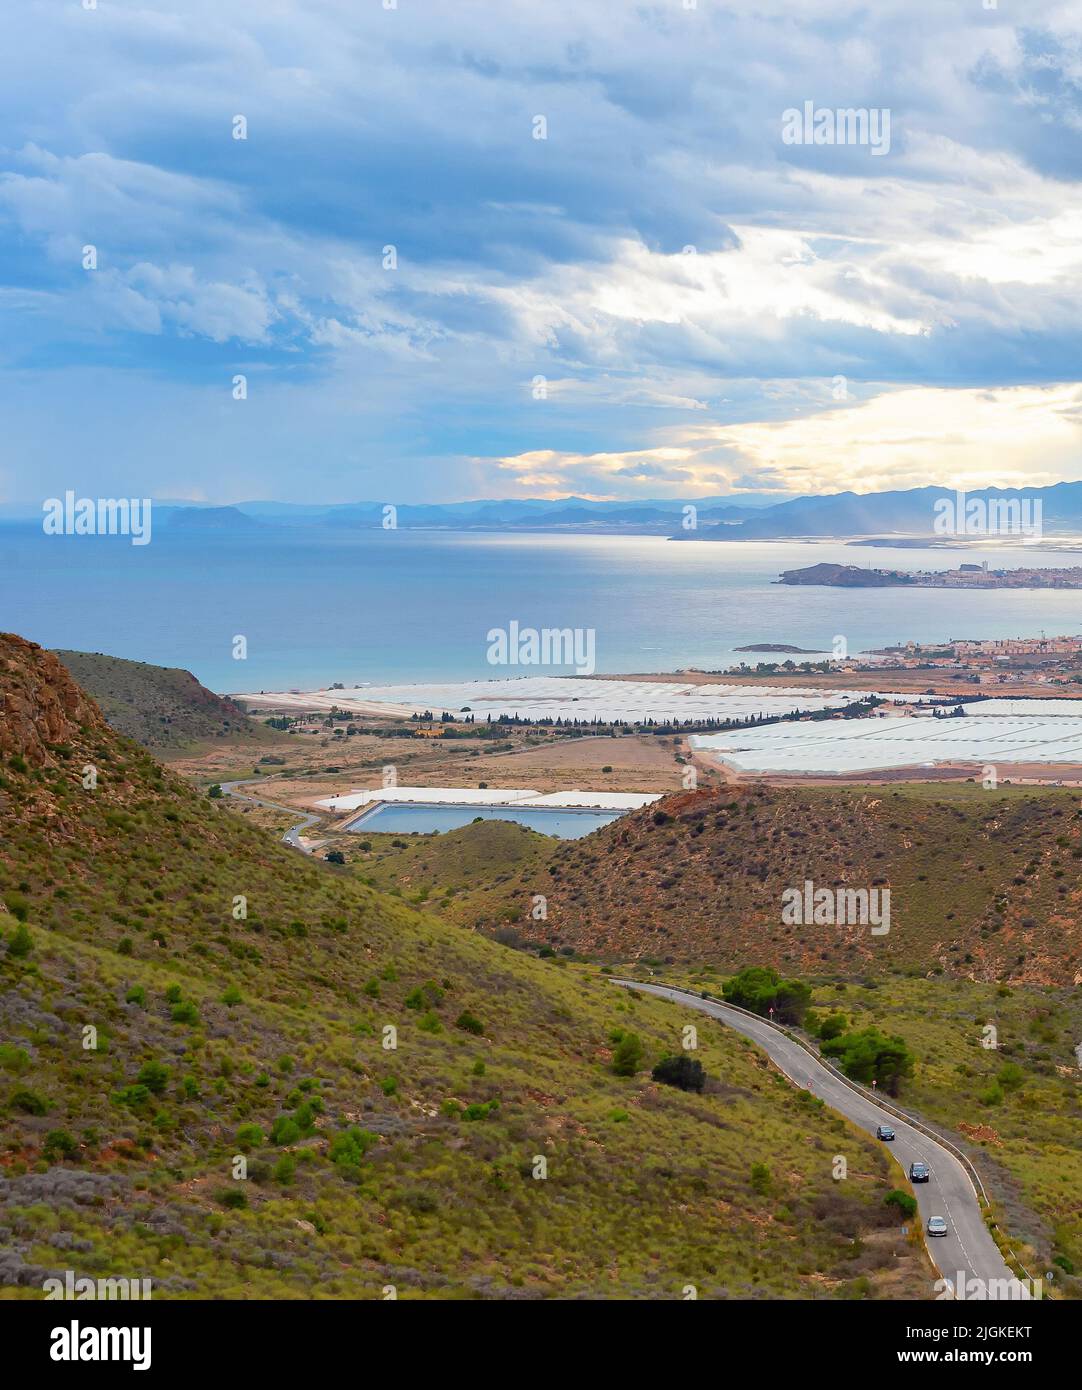 Paisaje con montañas y pueblo en vista costera bajo cielo tormentoso, al sur de España Foto de stock